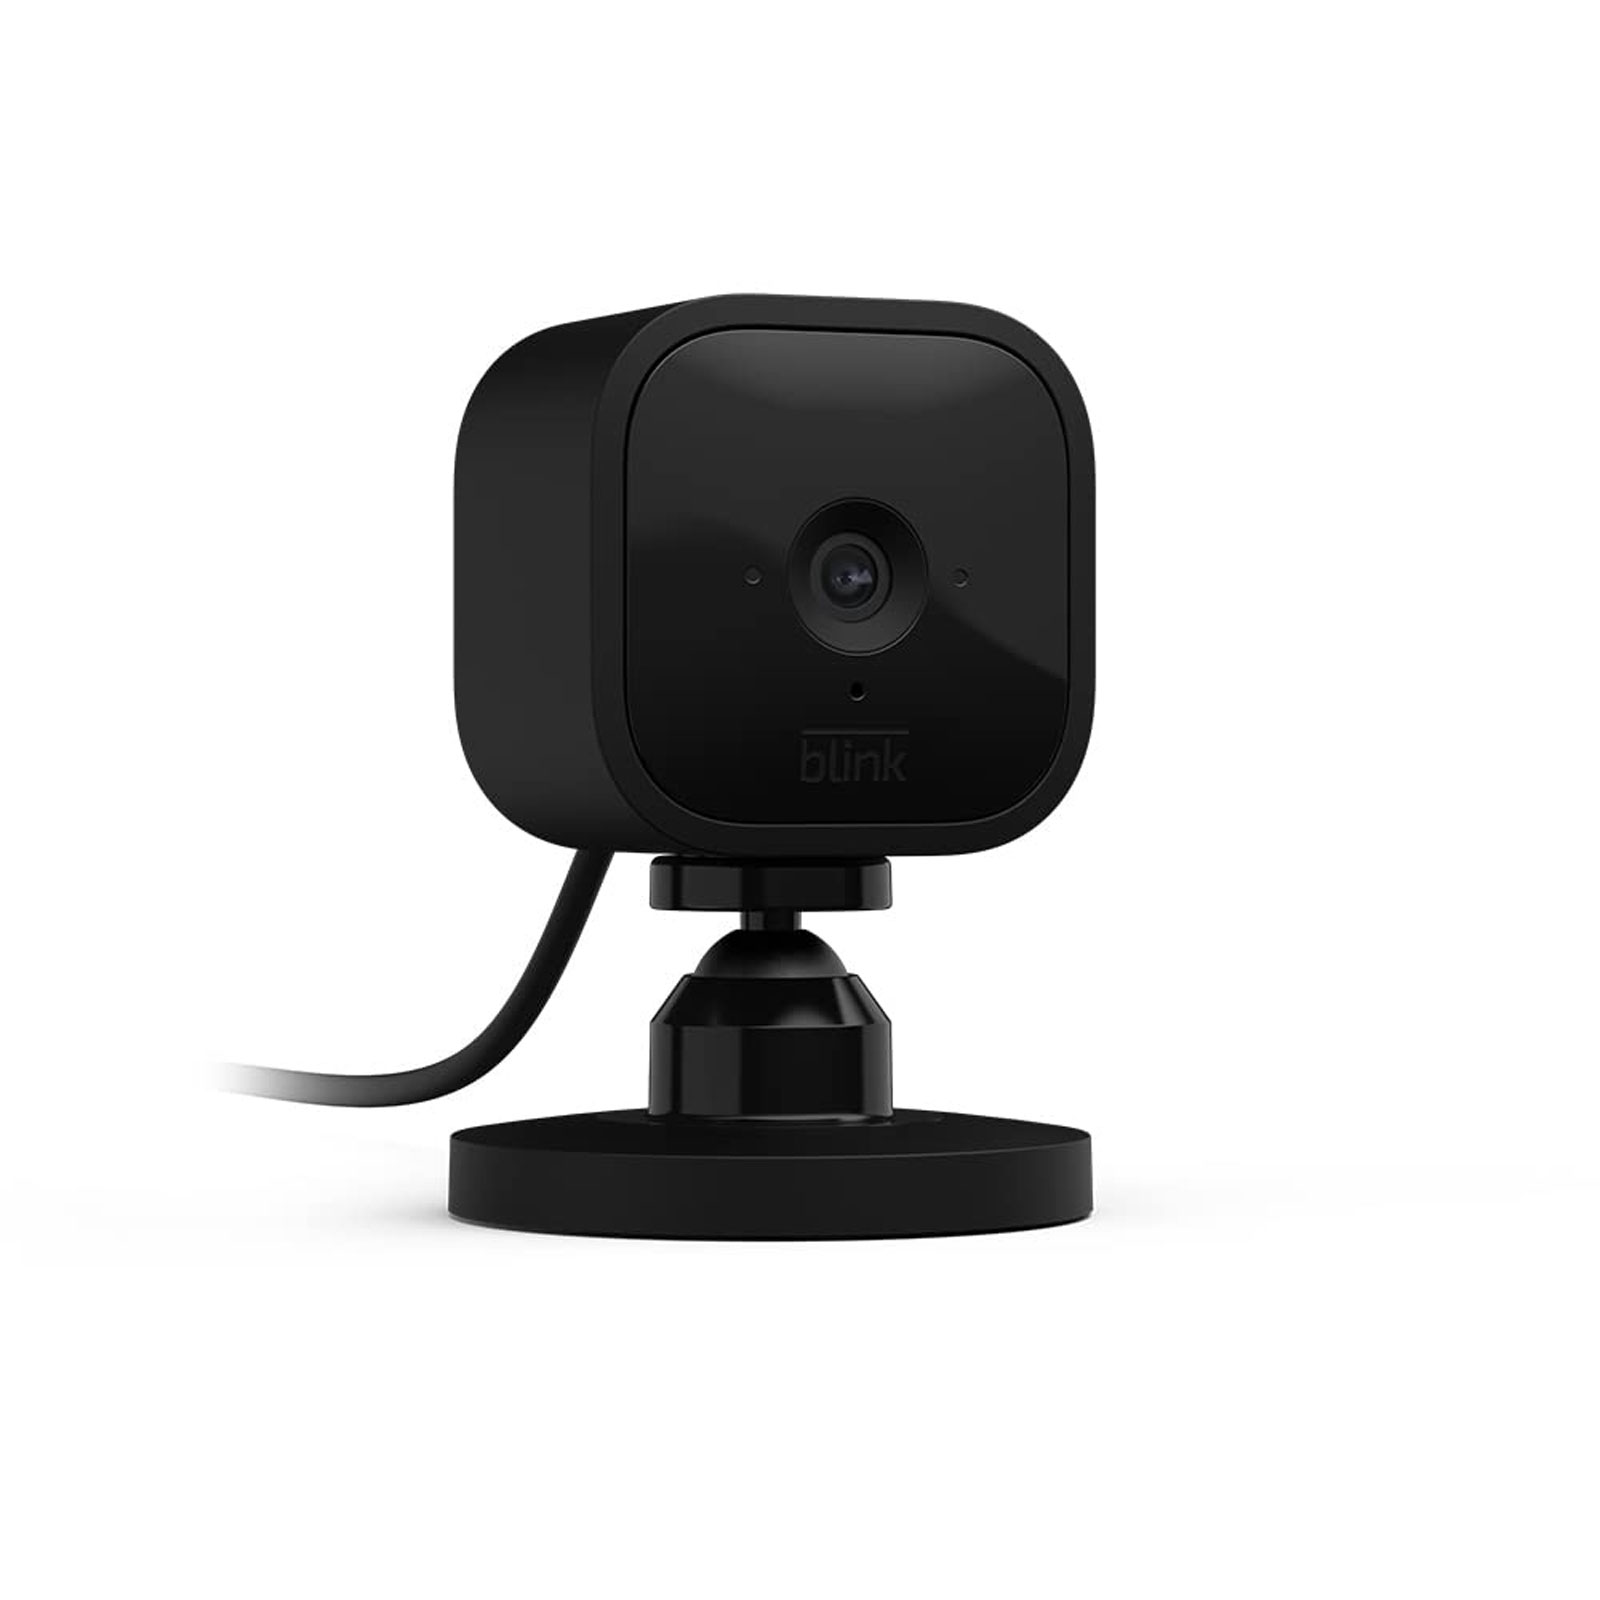 Blink Mini schwarz - 1 Kamera (Kompakte, smarte Plug-in-Sicherheitskamera für innen, 1080p-HD-Video, Nachtsicht, Zwei-Wege-Audio, Bewegungserfassung; einfache Einrichtung, funktioniert mit Alexa)